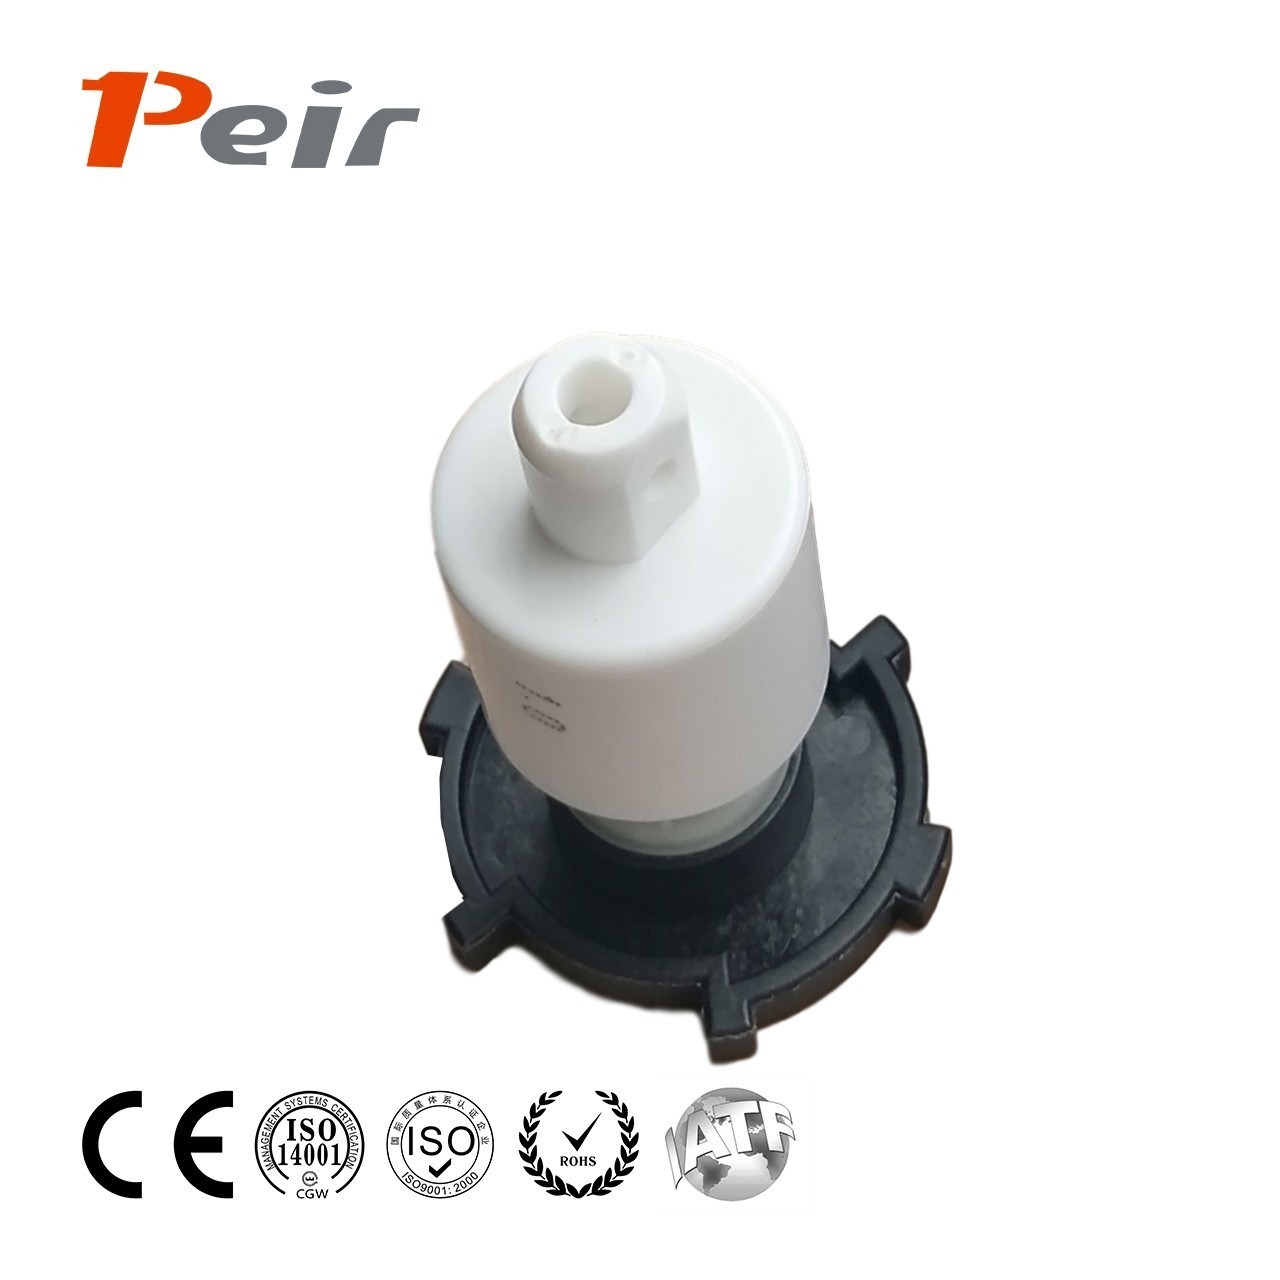 培尔/peir PR-T058 减速阻尼器厂家供应 可调液压阻尼器 阻尼器缓冲器 窗帘阻尼器